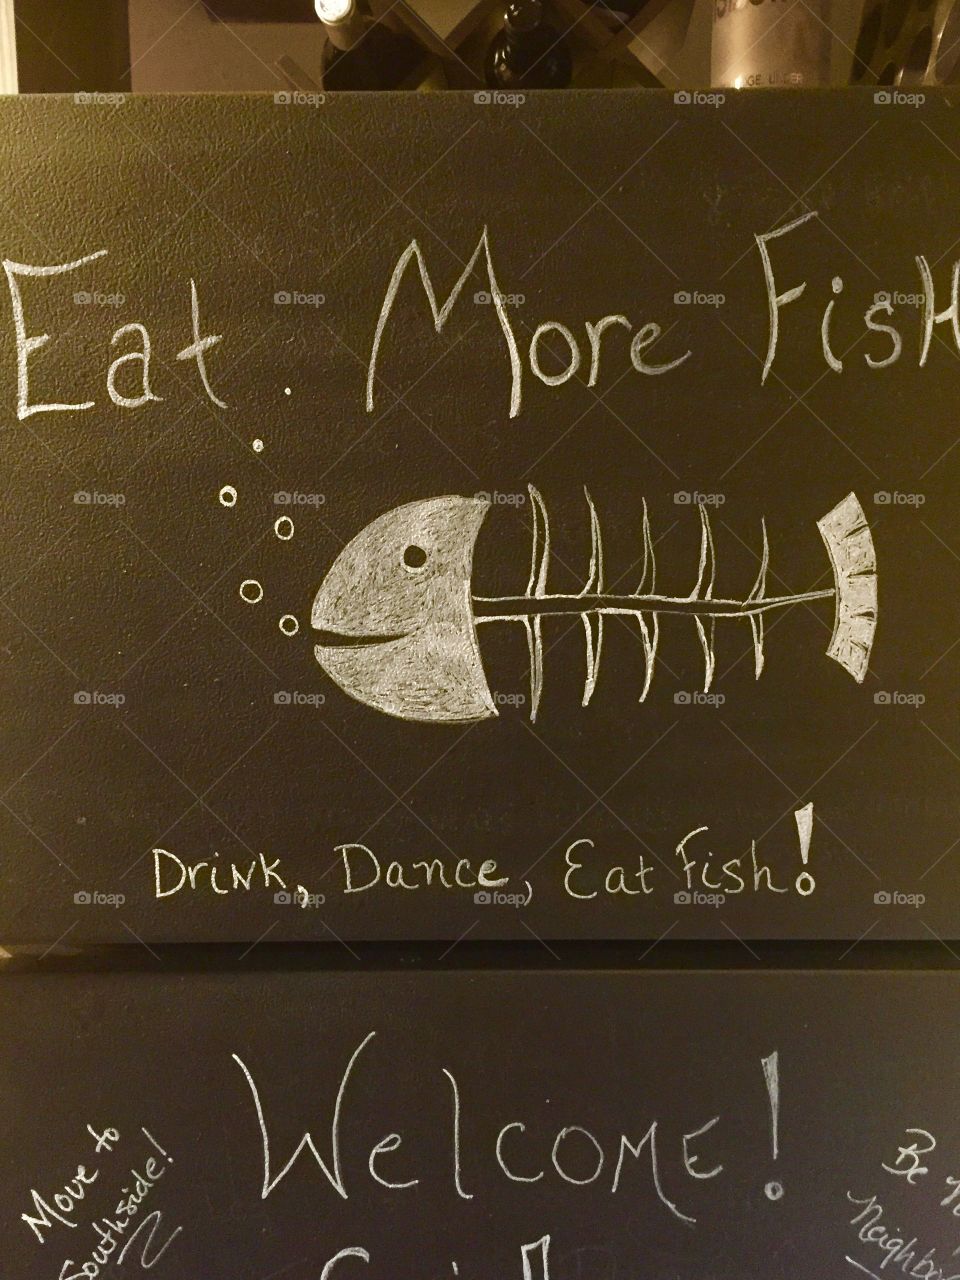 Eat more fish